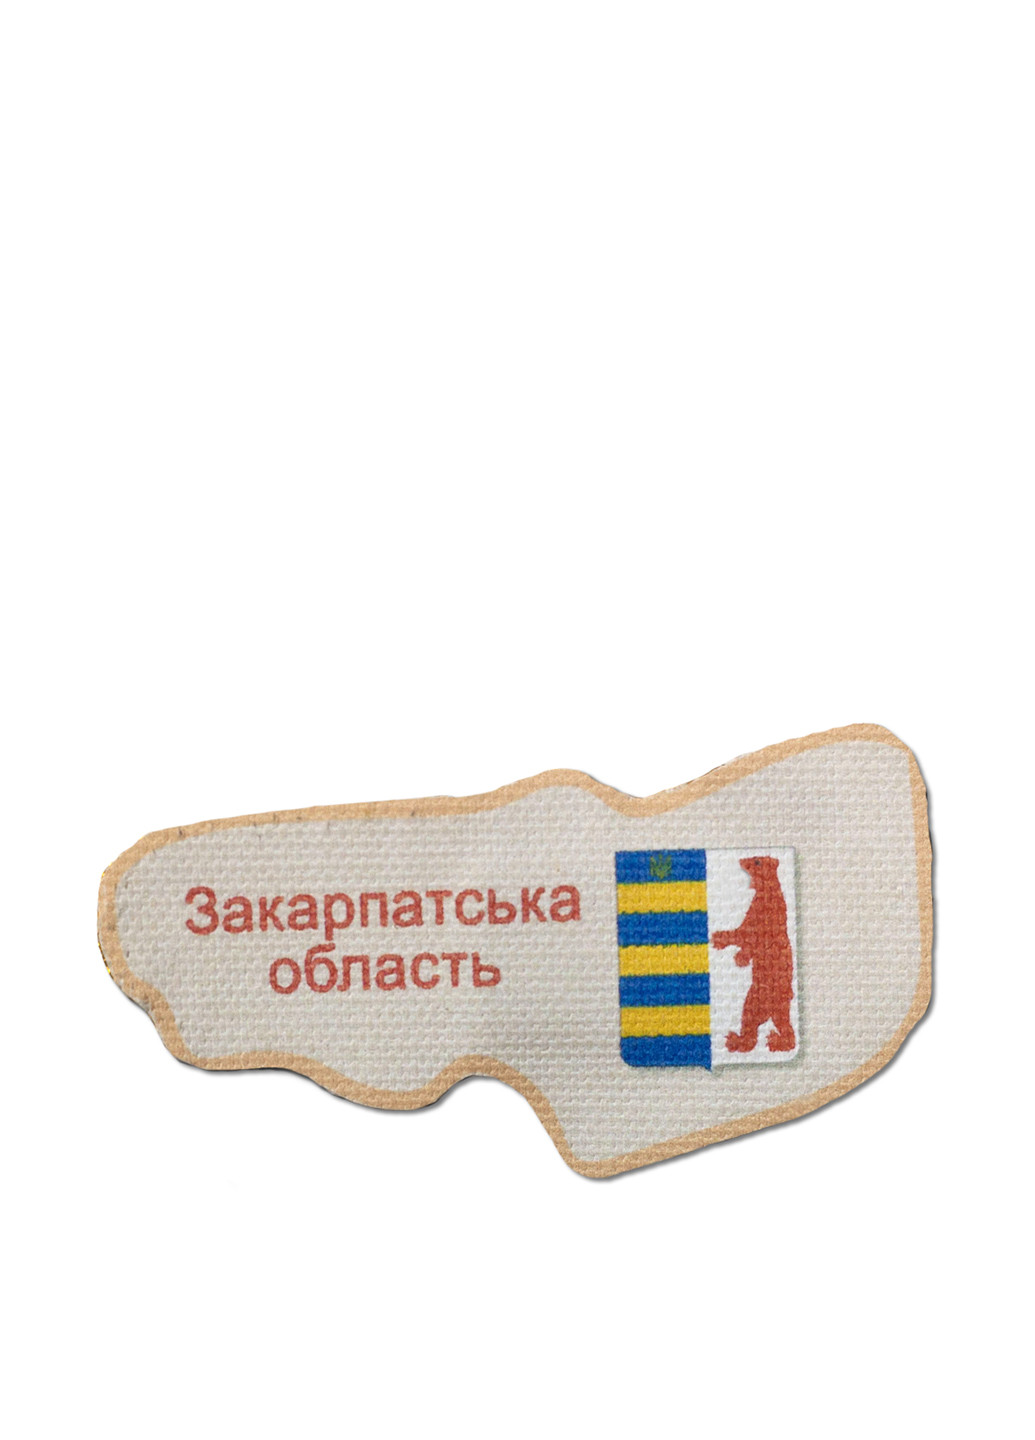 Набор для вышивания бисером Закарпатская область, 6,8х3,5 см Abris Art (131145703)